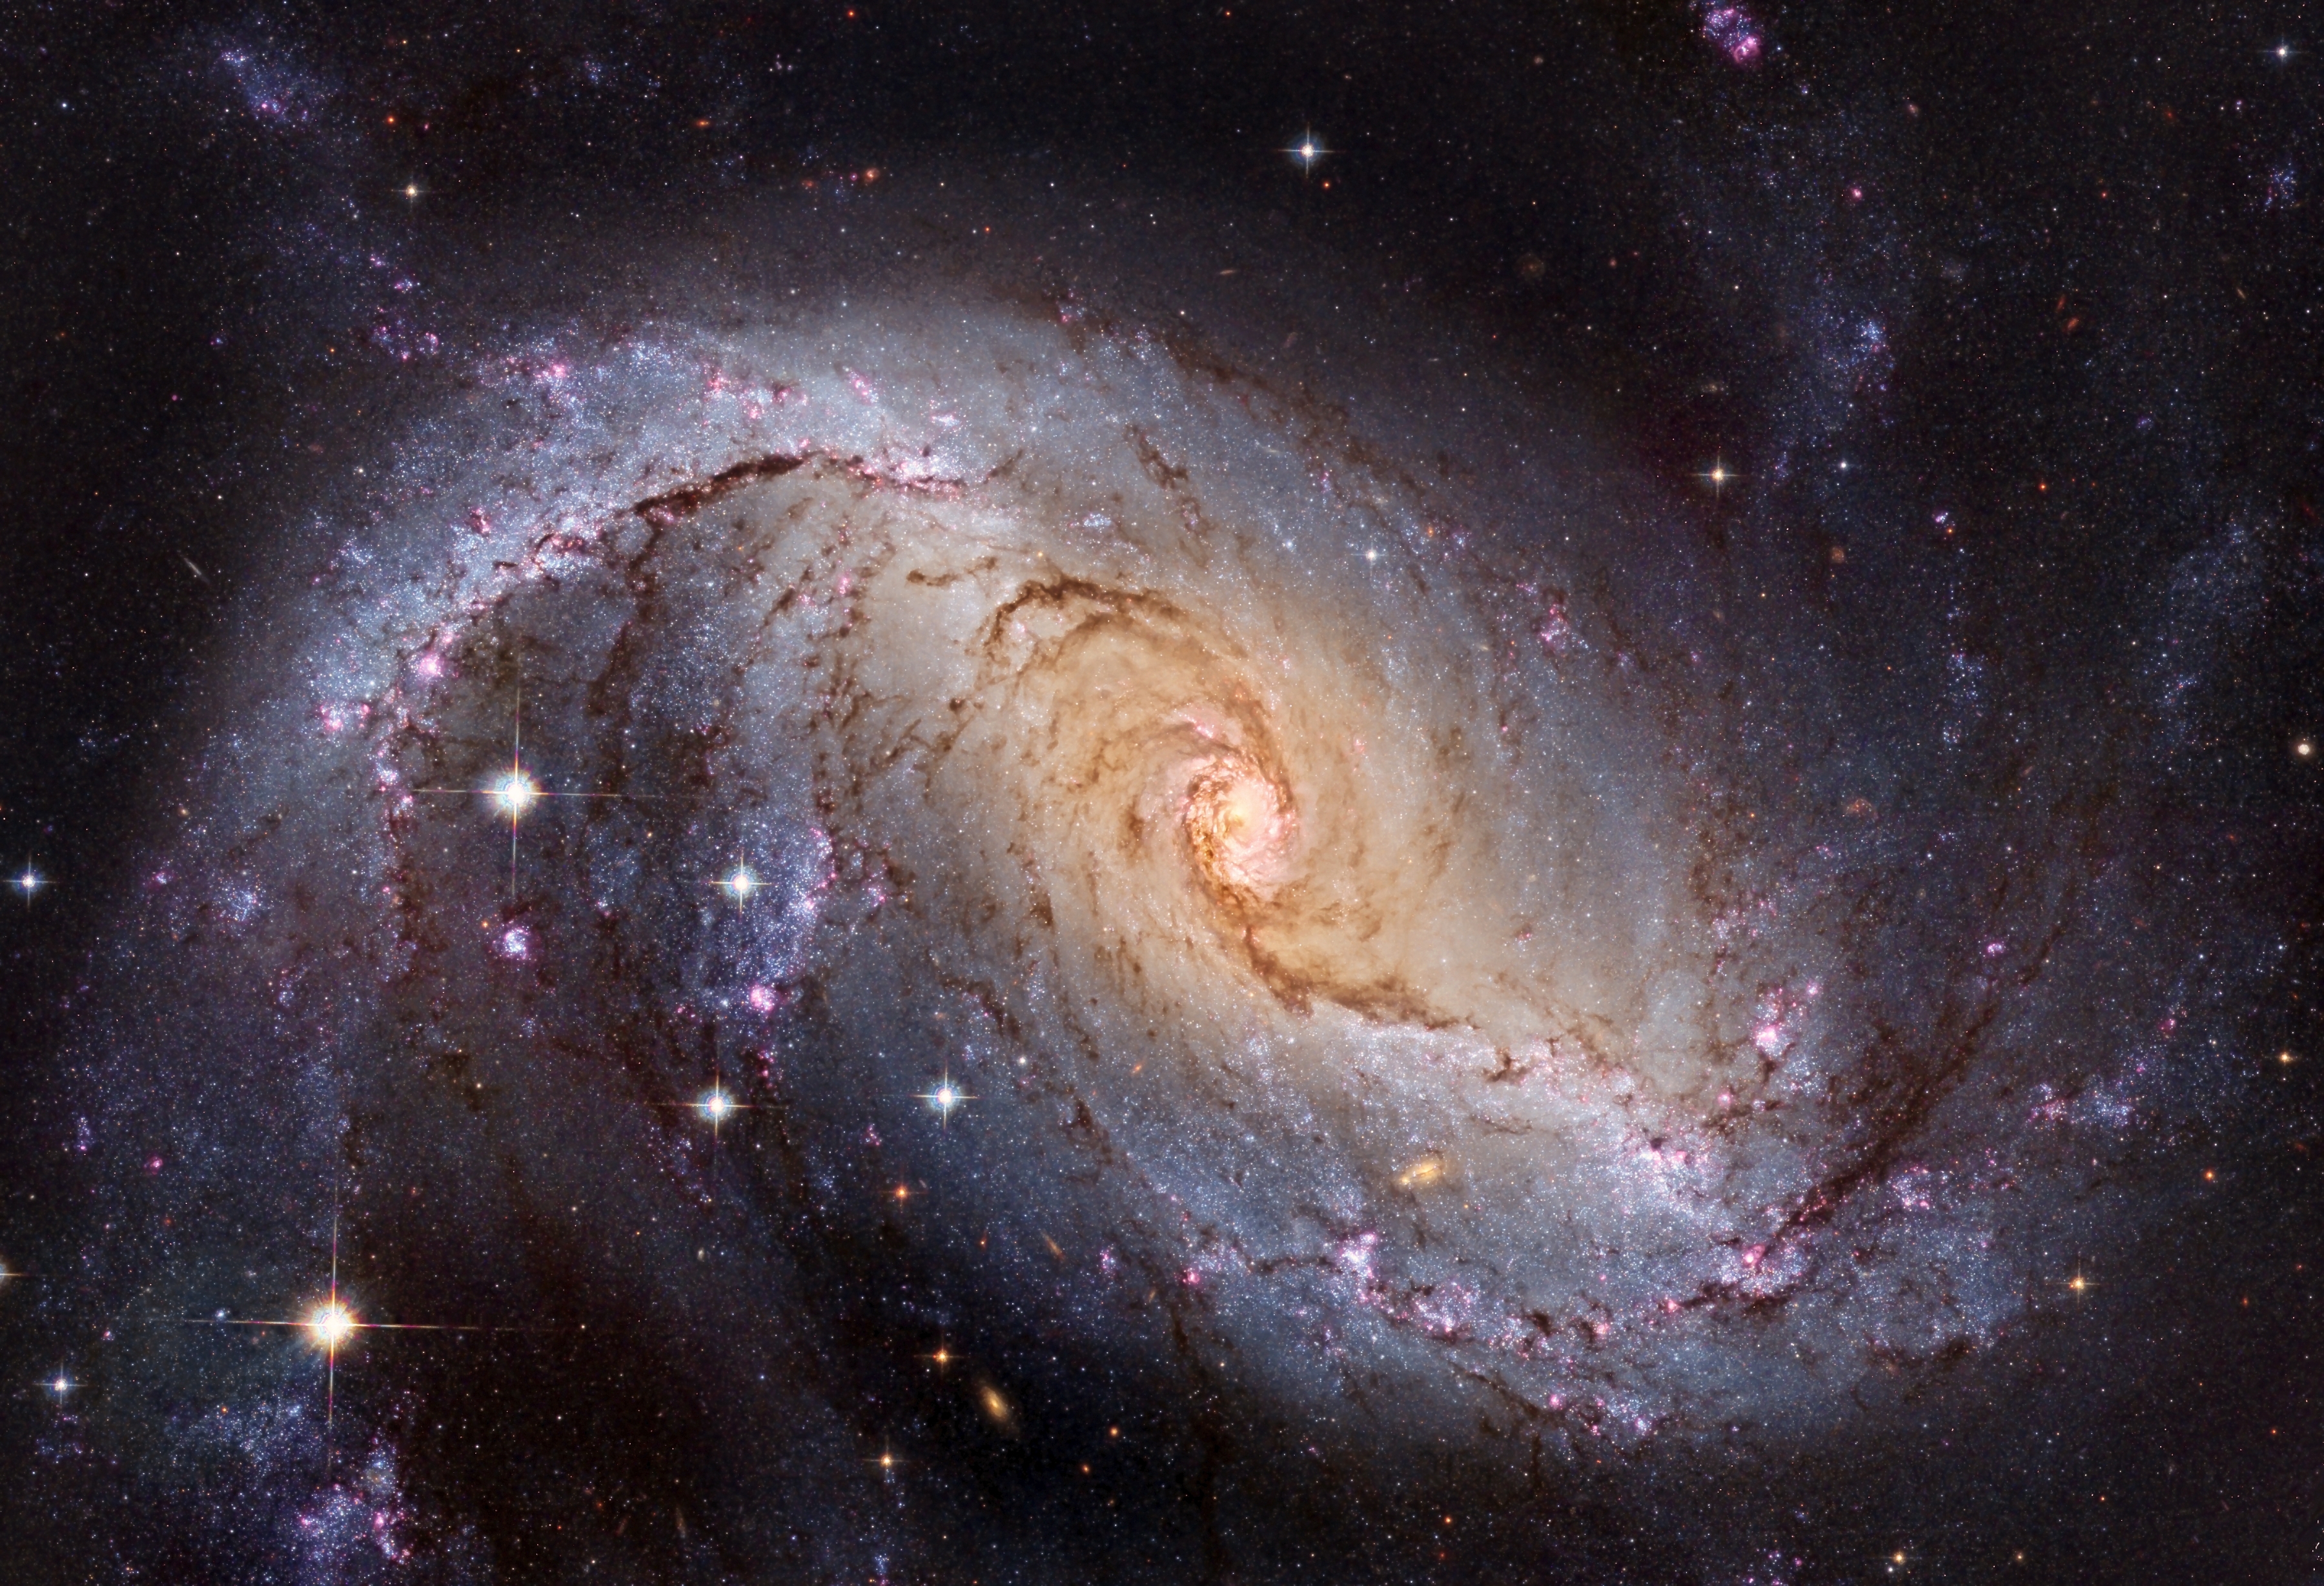 [Image: NGC1672_Hubble_3600.jpg]